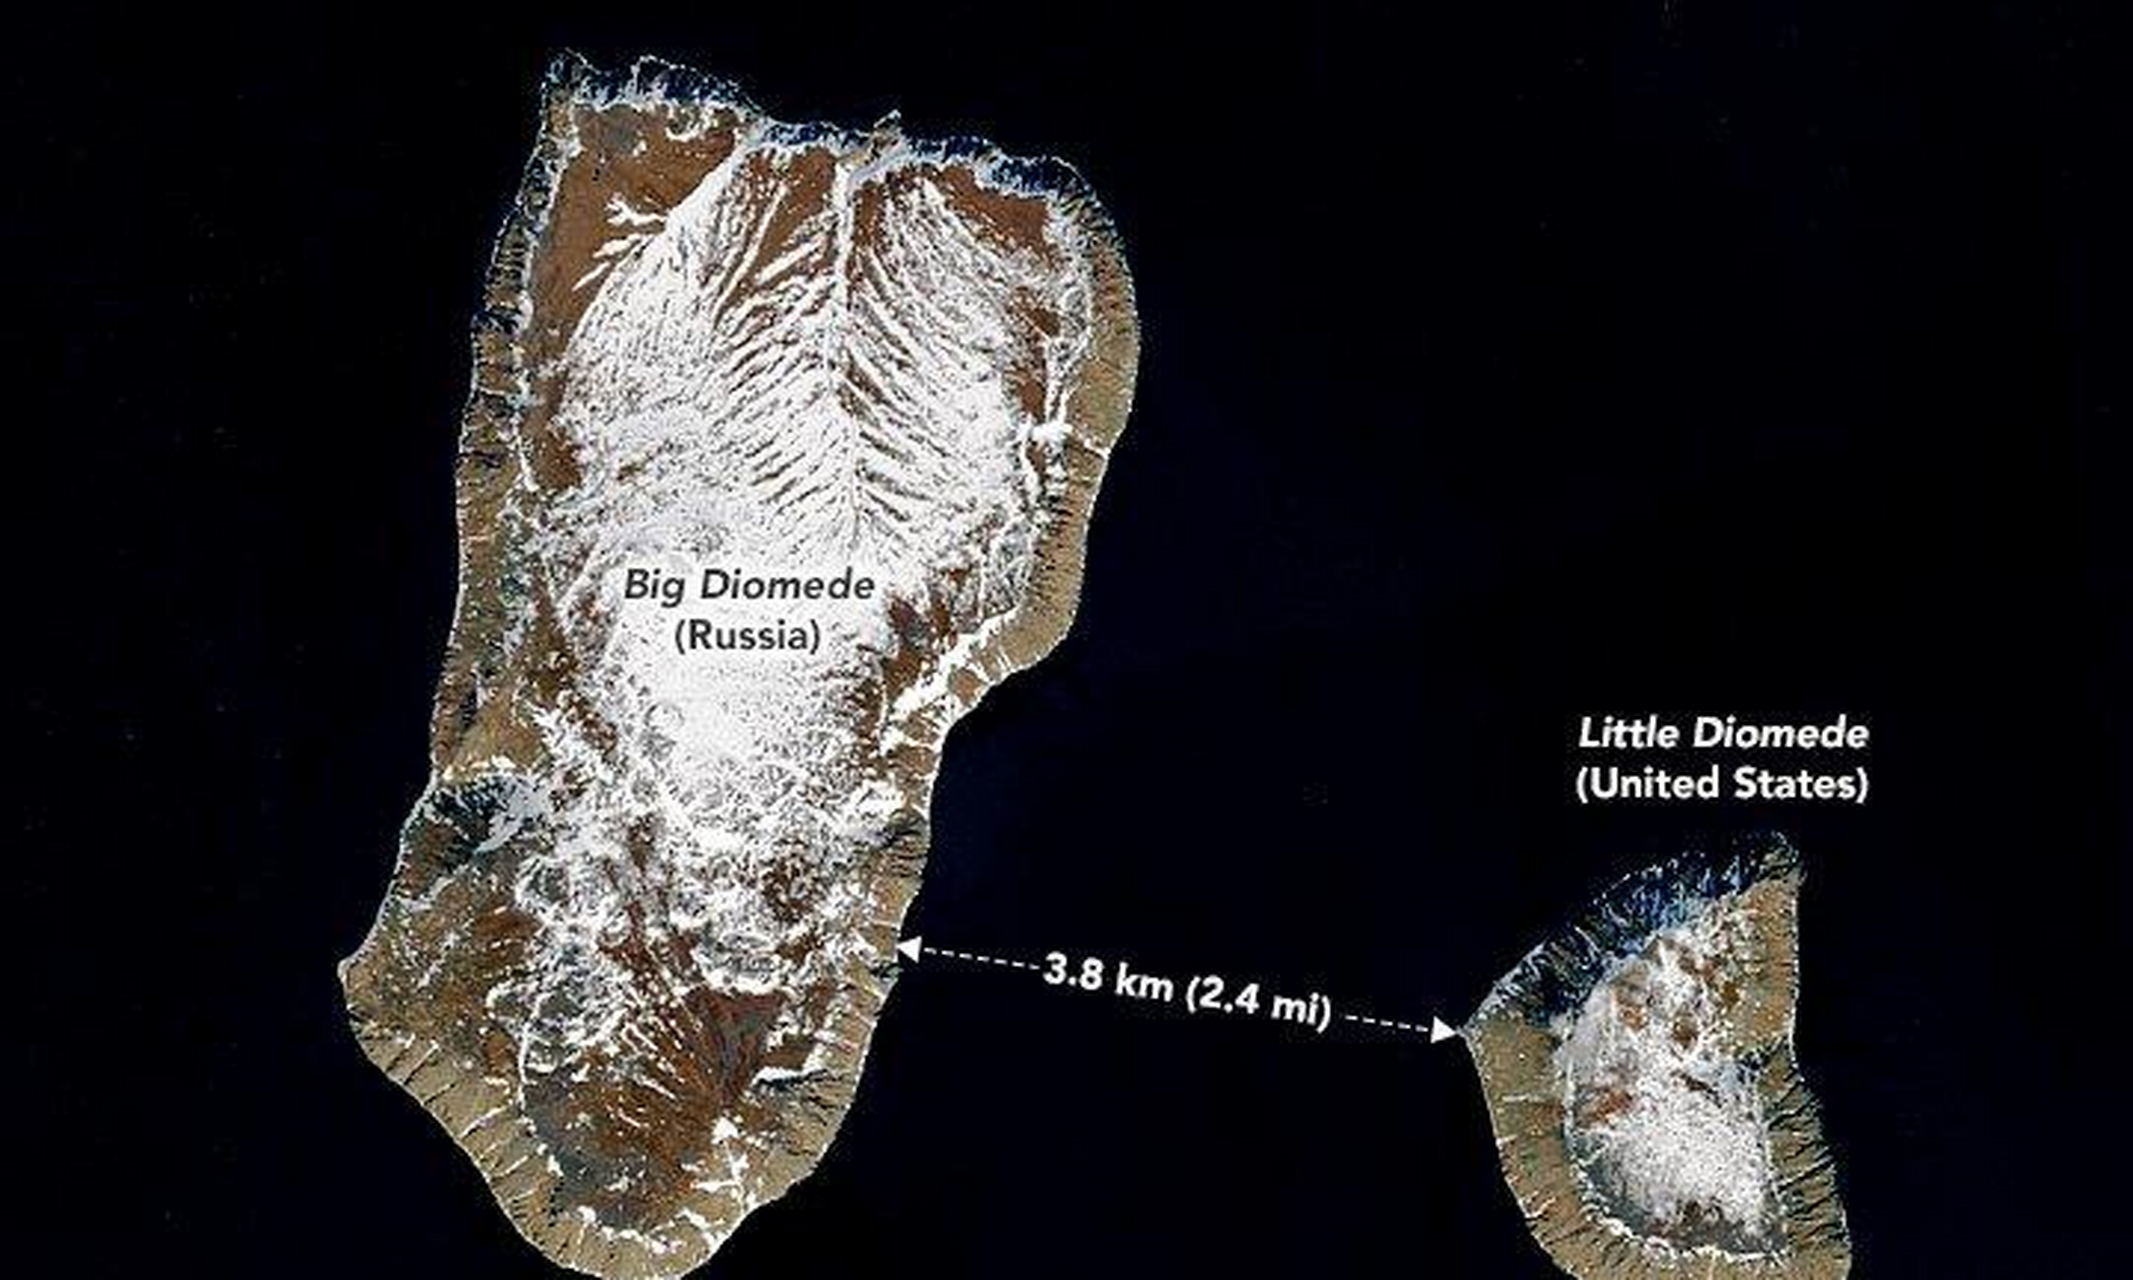 东边的岛称为小代奥米德岛,为美国的领土;这两座岛中间有条国际日期